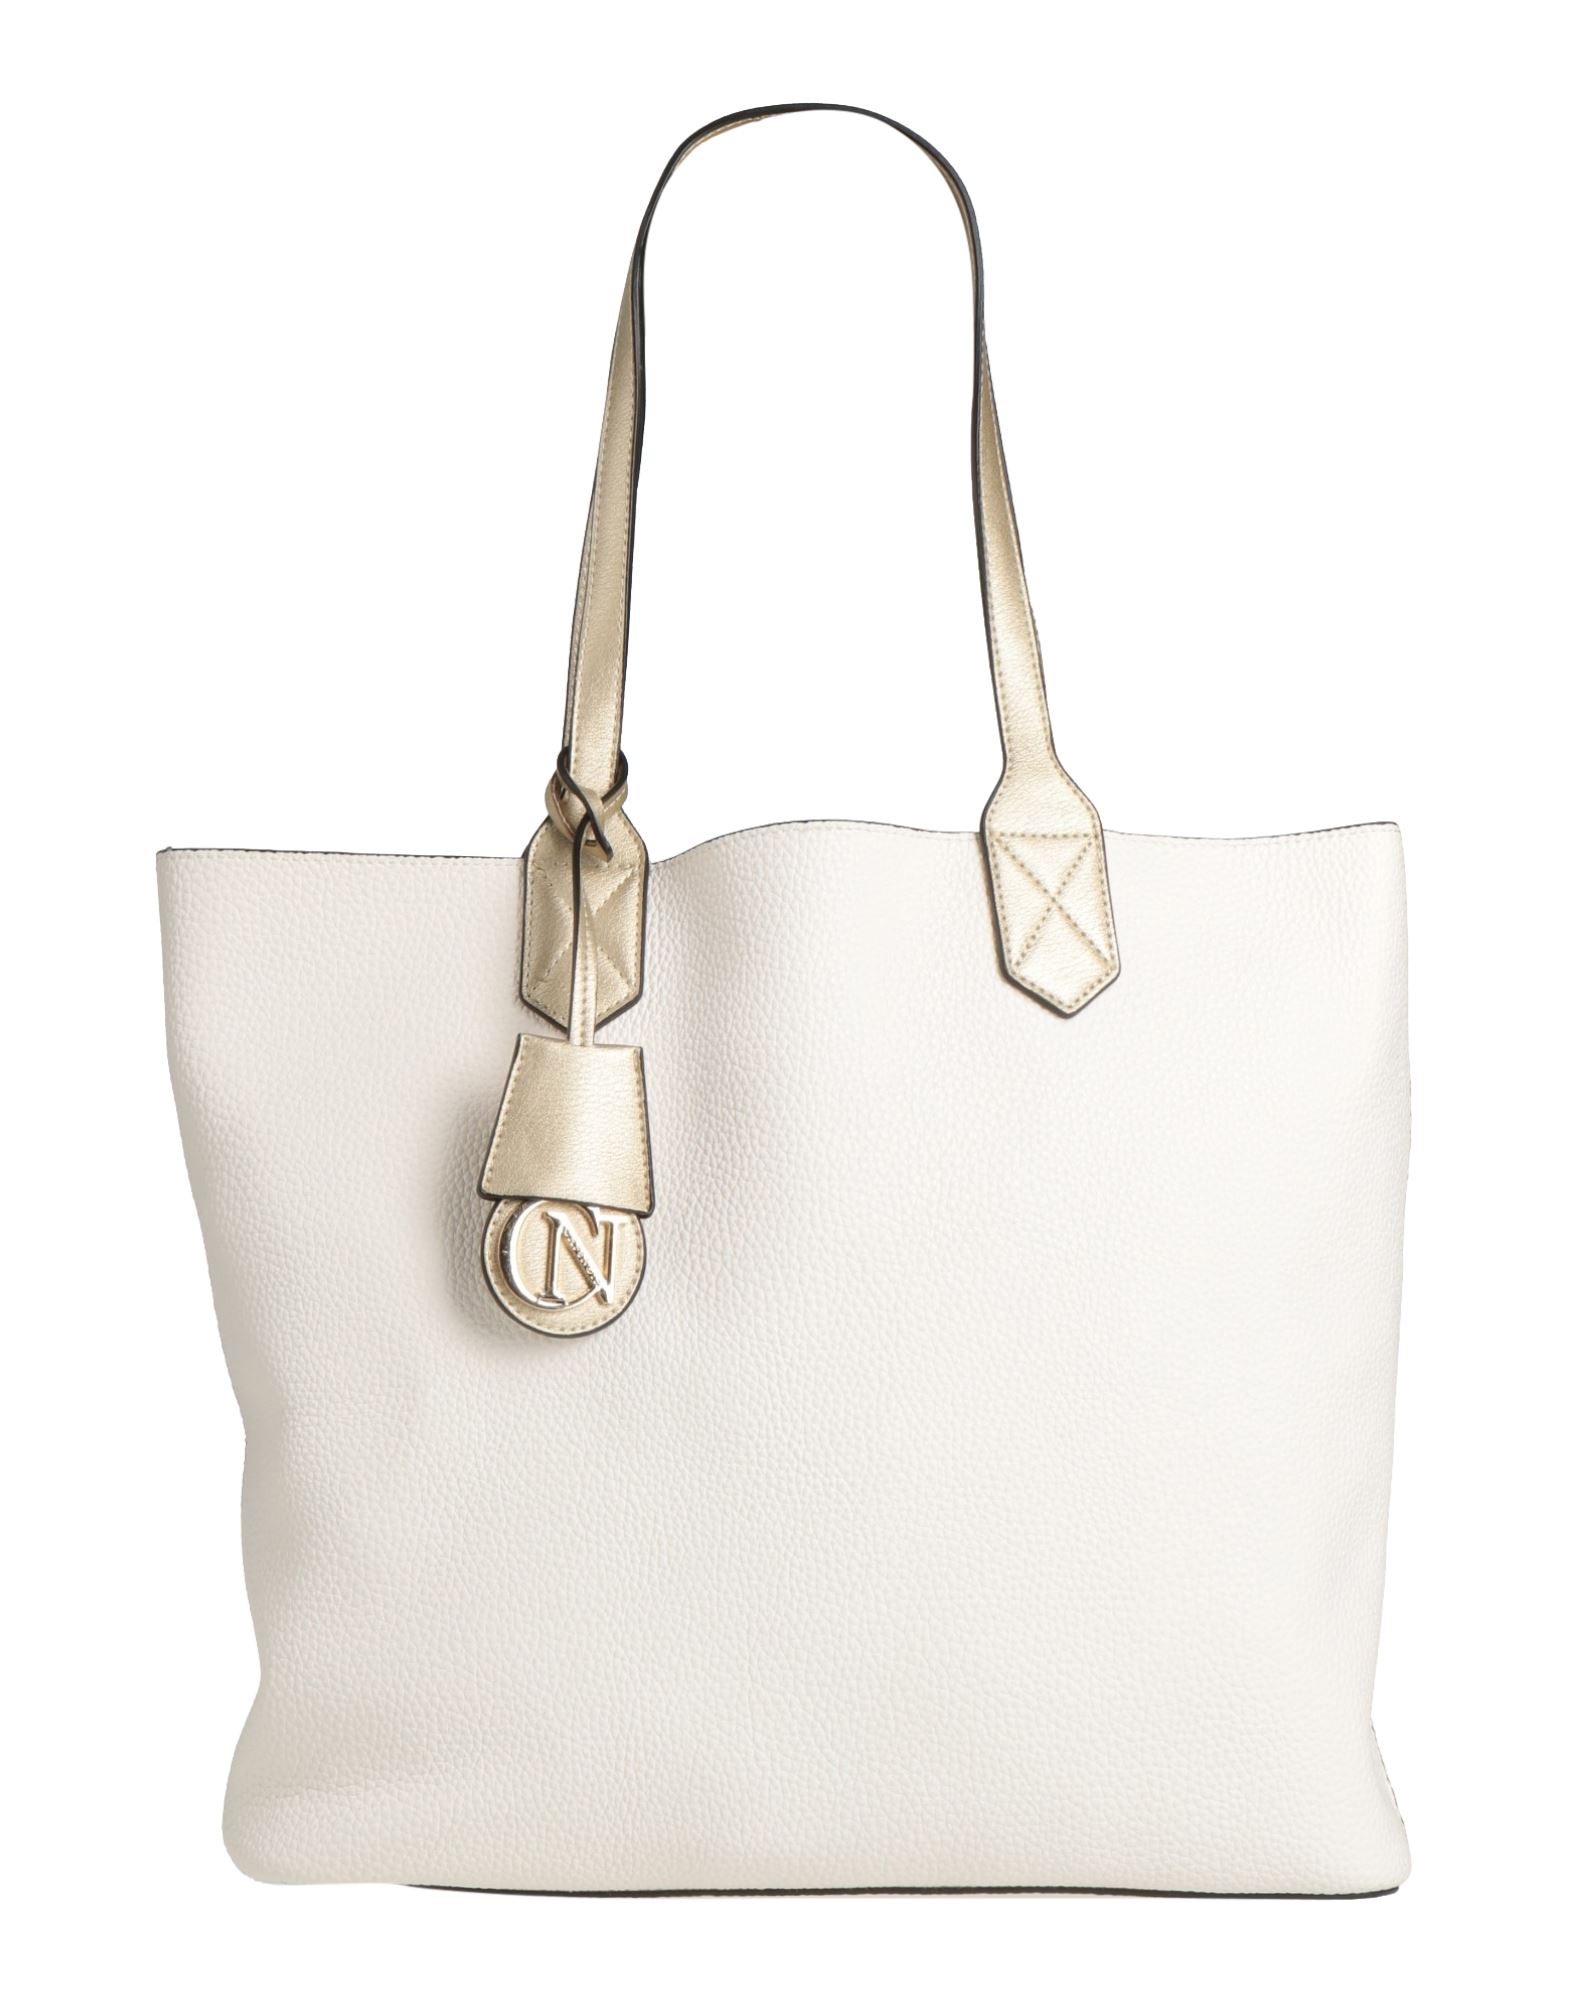 Cafènoir Handbags In White